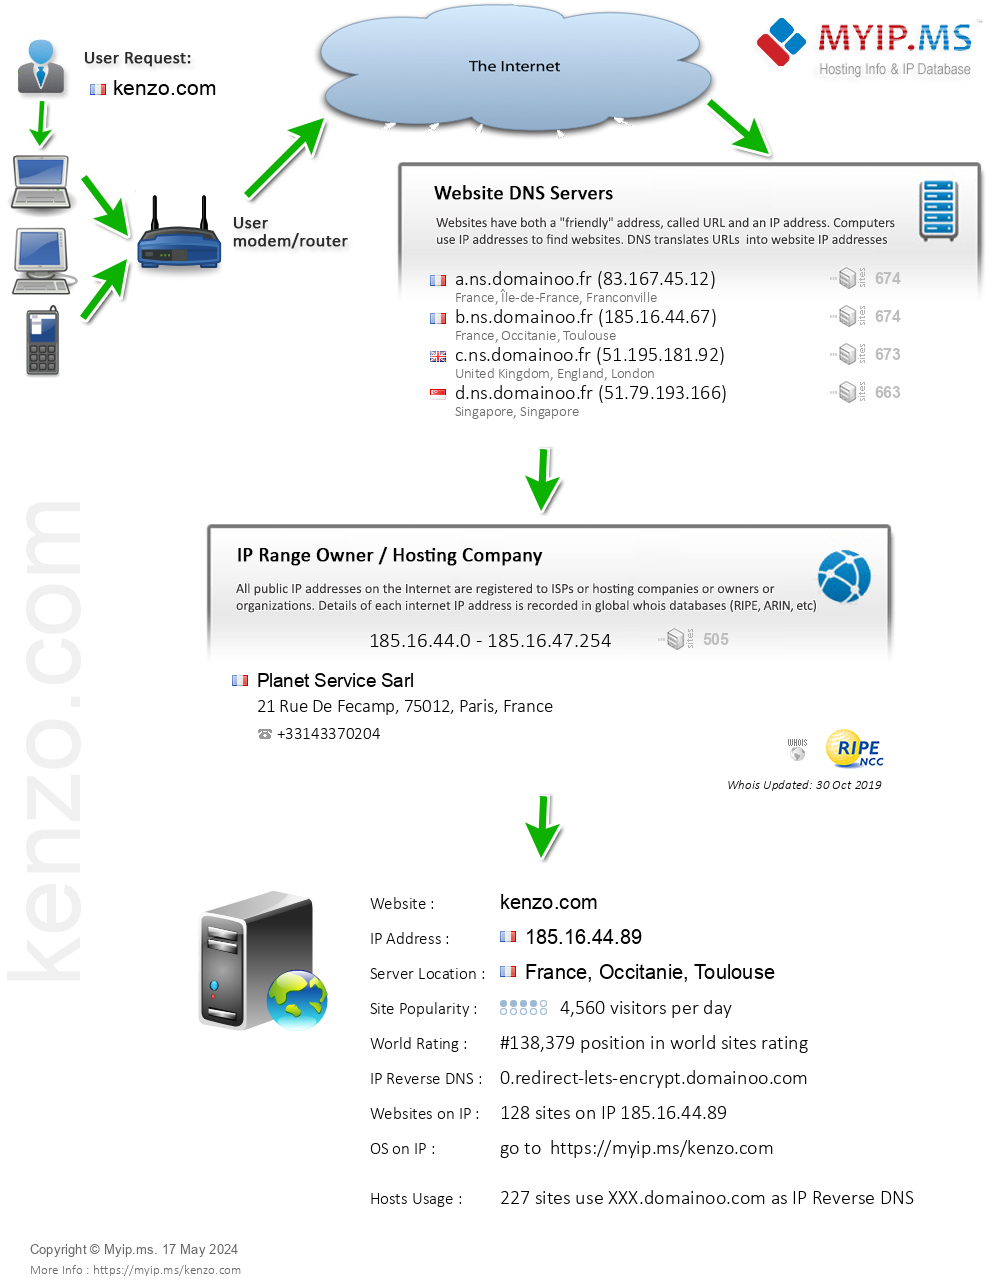 Kenzo.com - Website Hosting Visual IP Diagram